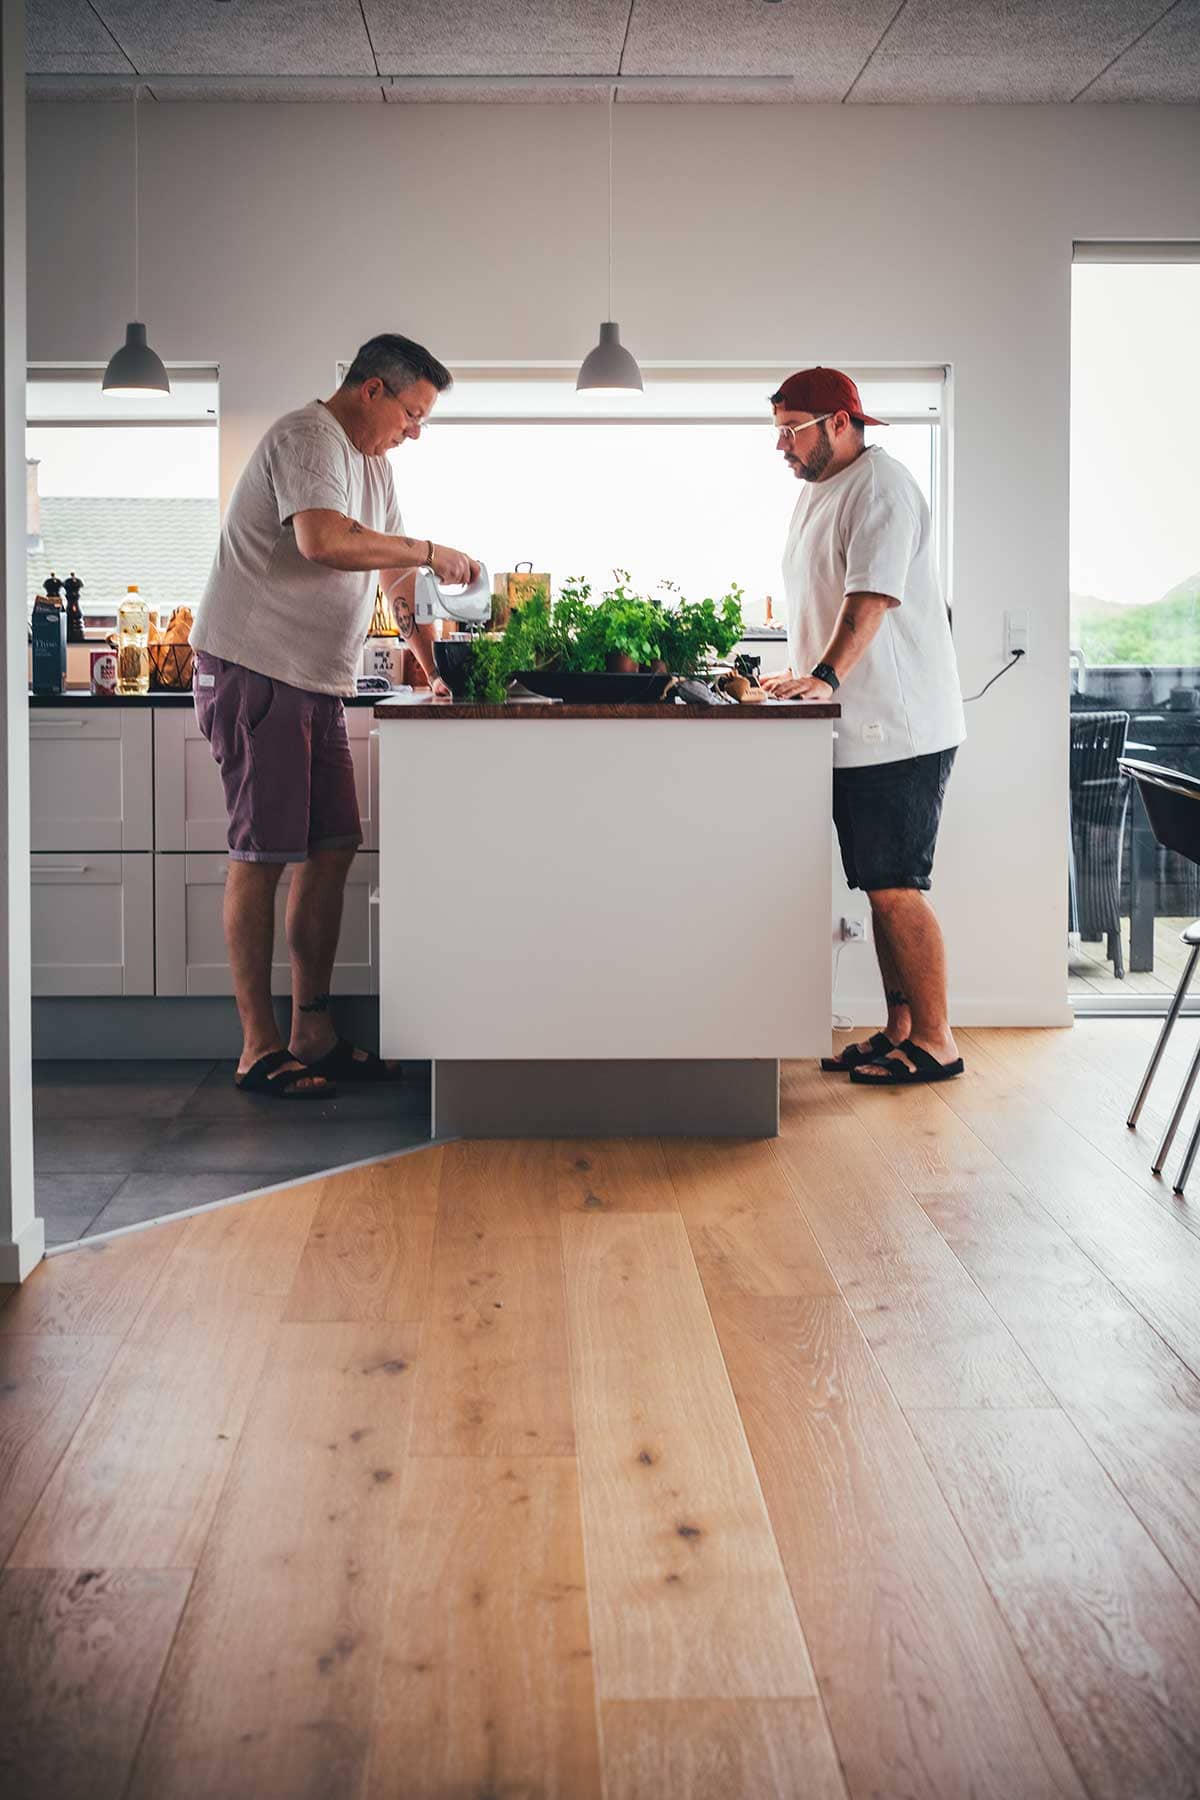 Unser letzter Tag auf Fanø steht ganz im Zeichen des Kochens. In unserem gemütlichen und liebgewonnen Ferienhaus bereitet jeder von uns ein besonders Rezept mit den lokalen Zutaten von Fanø zu. | moeyskitchen.com